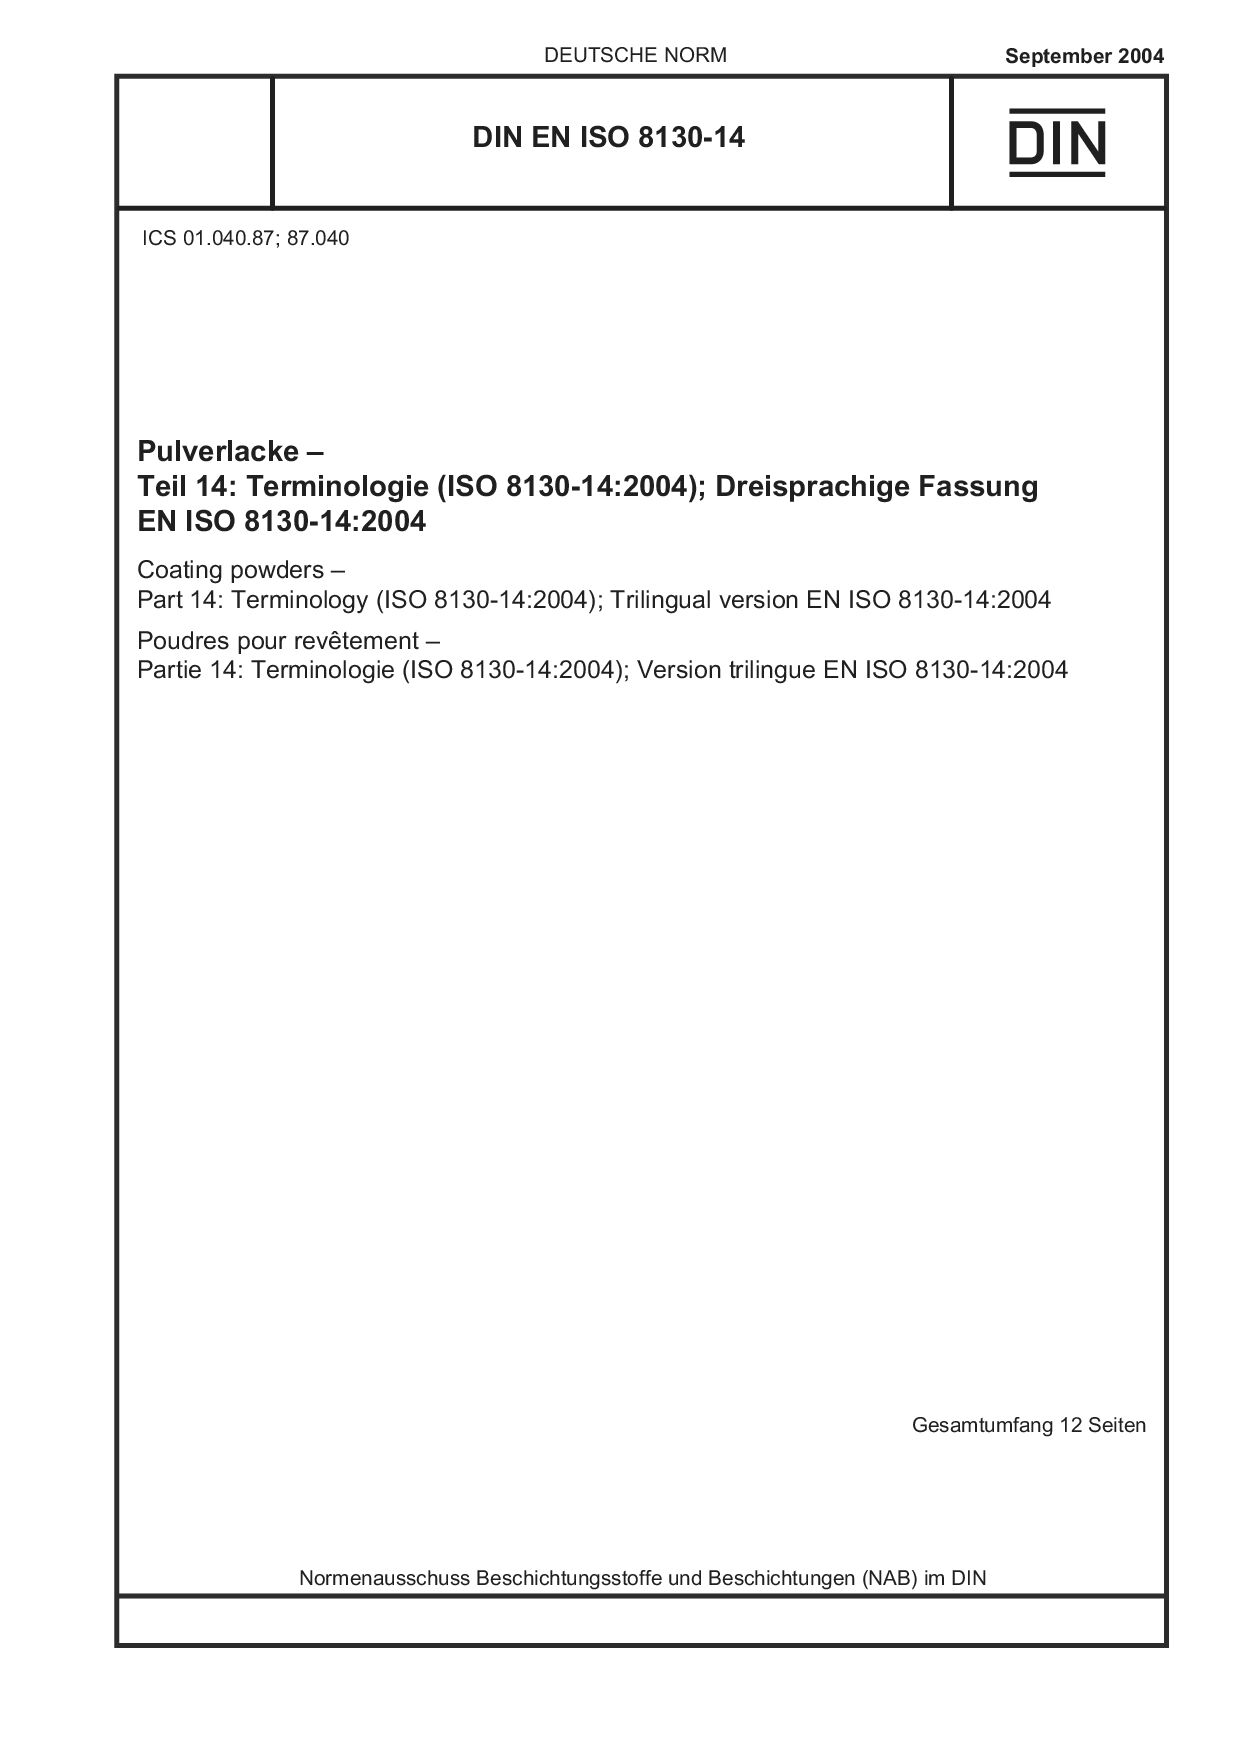 DIN EN ISO 8130-14:2004